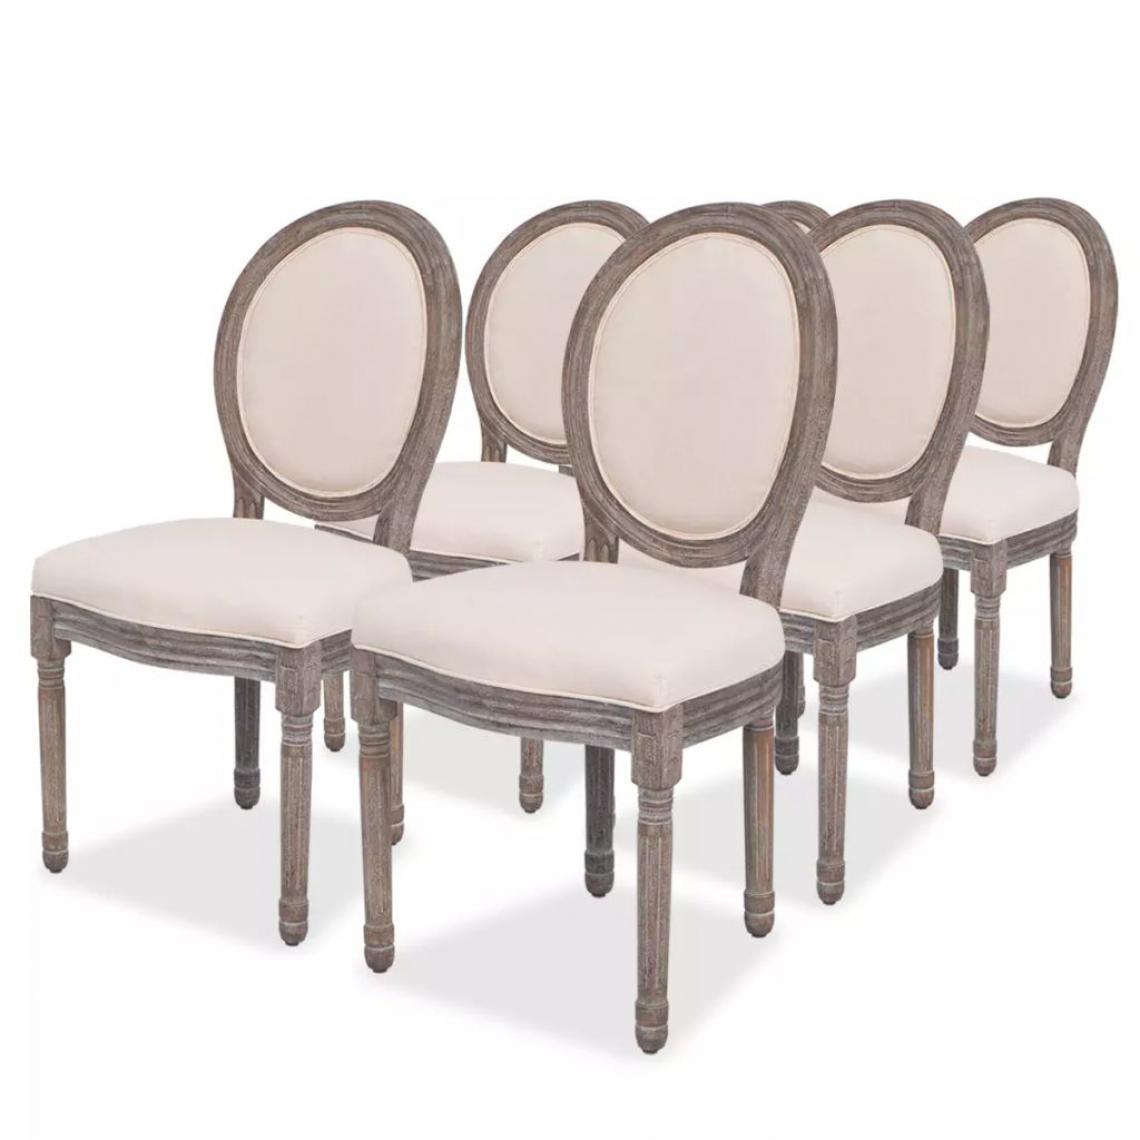 Decoshop26 - Lot de 6 chaises de salle à manger cuisine design classique en tissu crème CDS022367 - Chaises